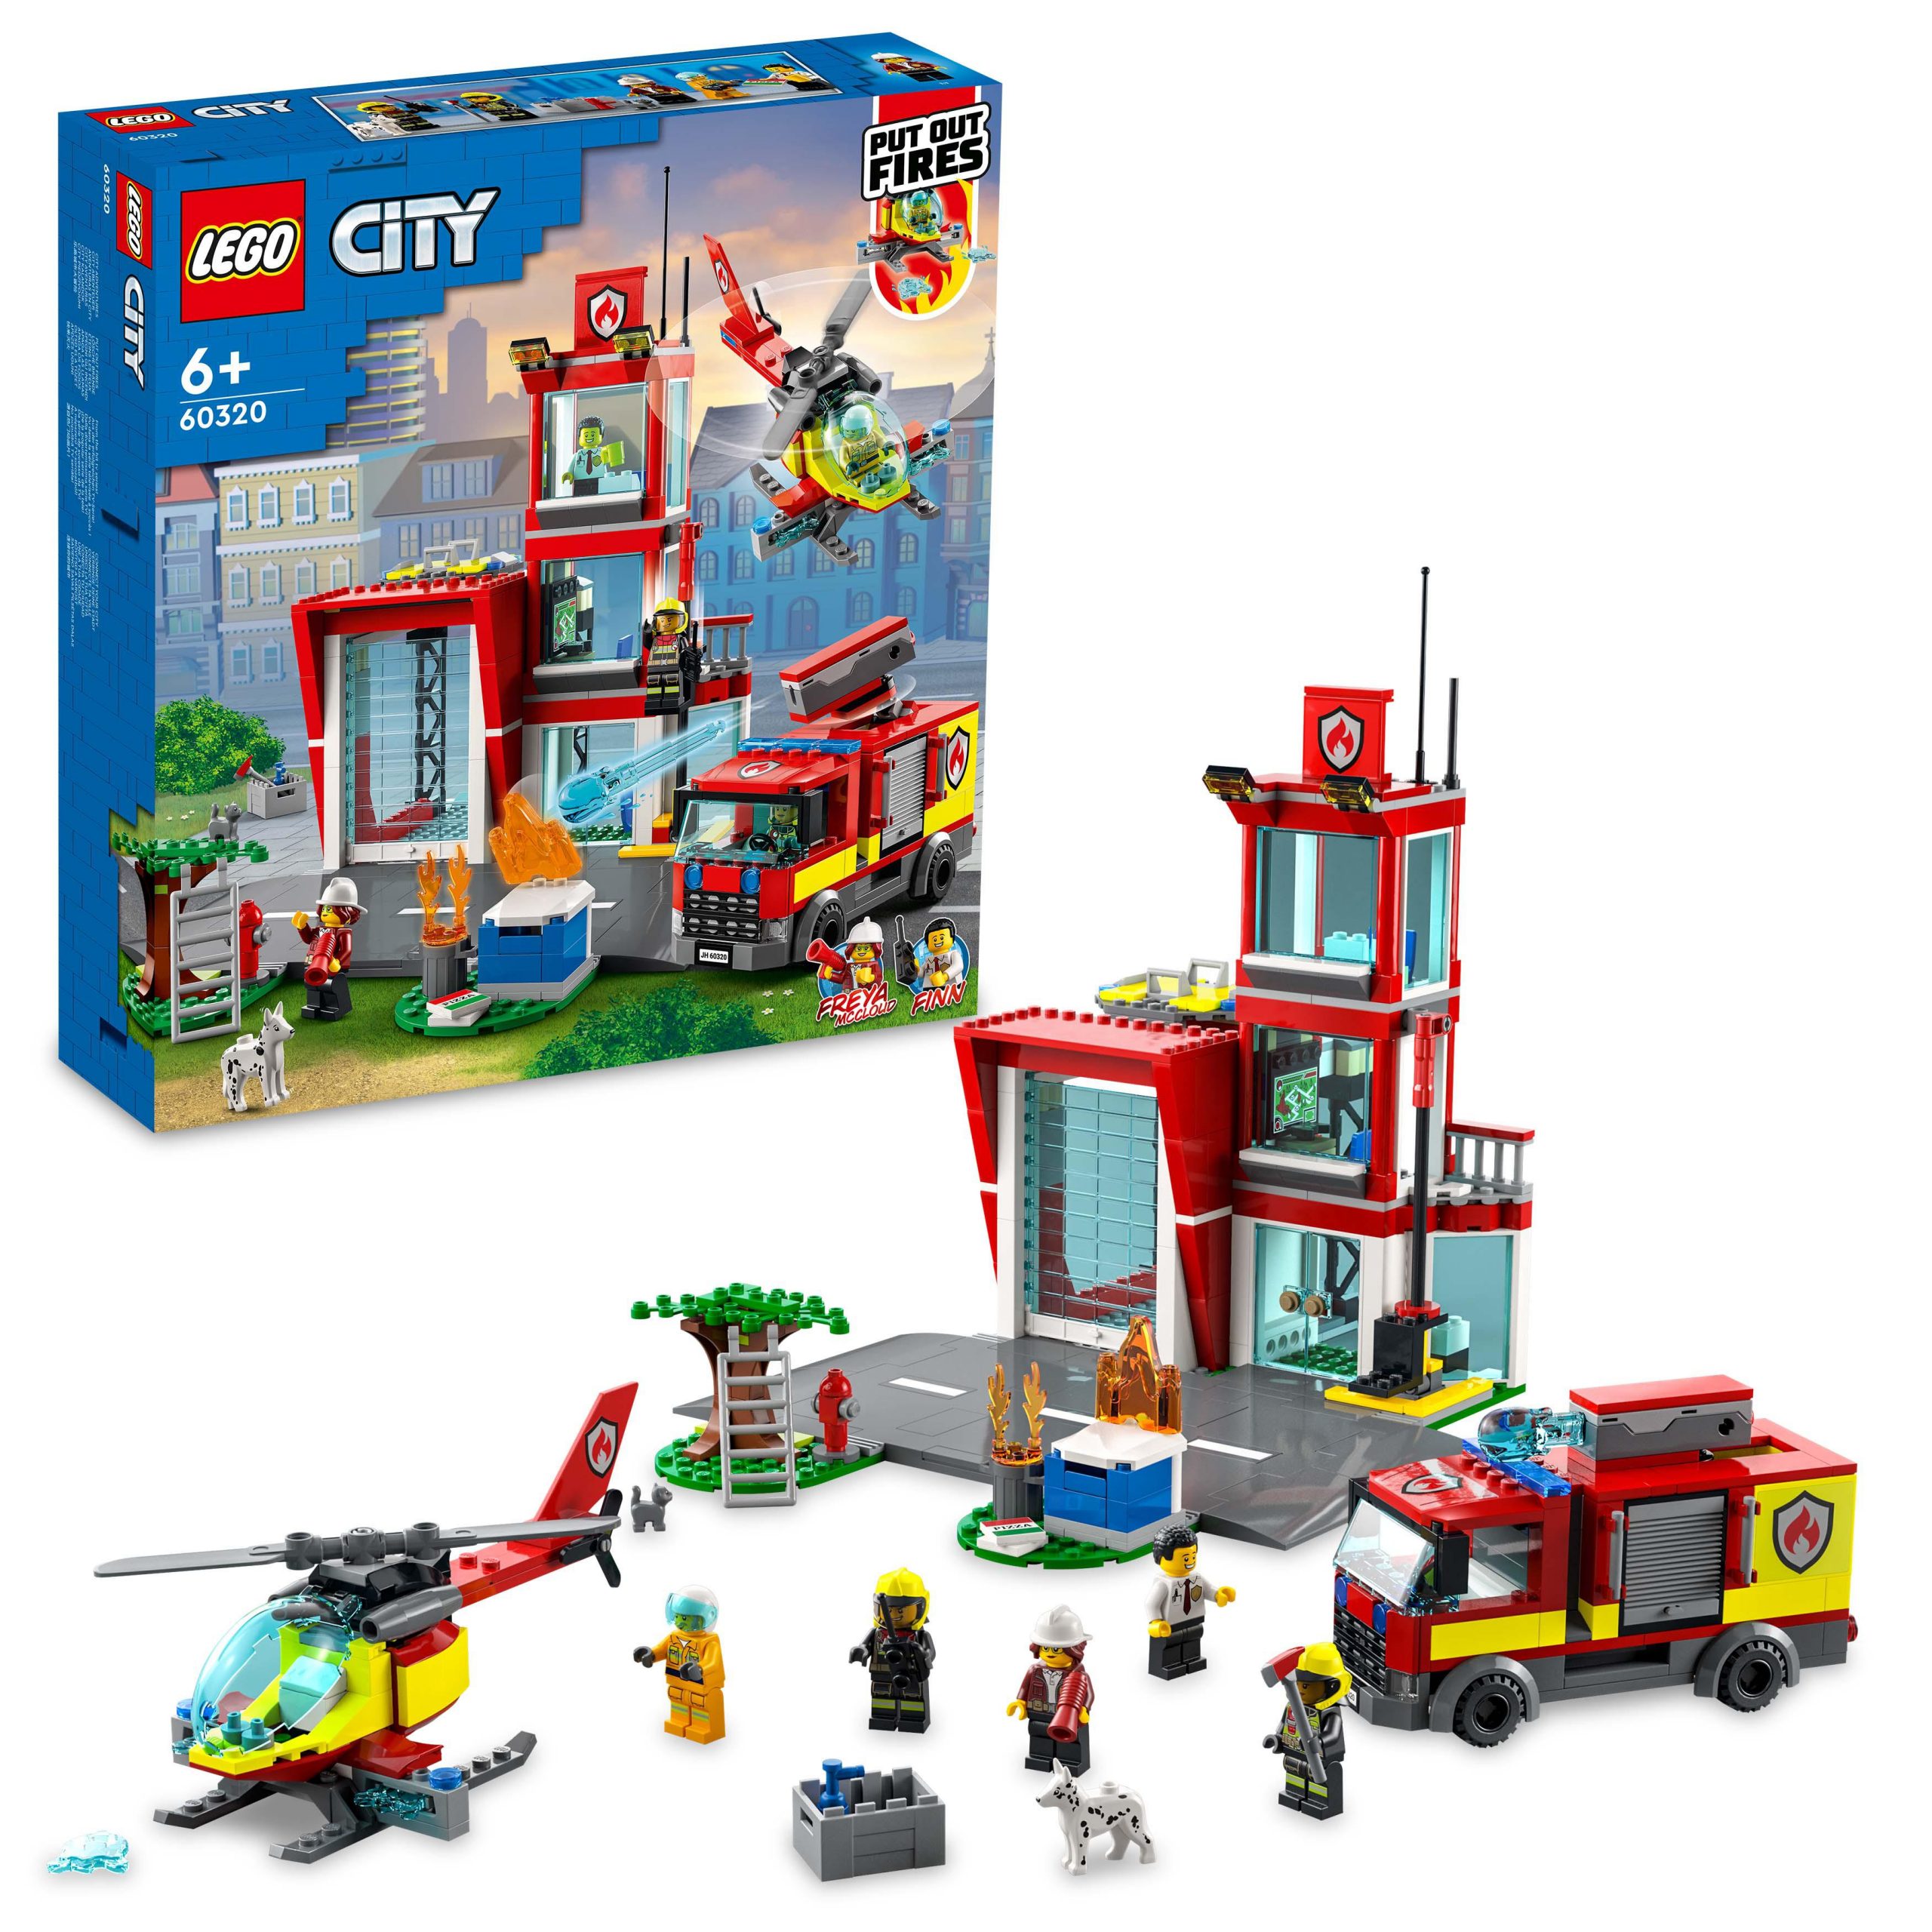 Lego city fire caserma dei pompieri, con garage, camion ed elicottero giocattolo, set per bambini di 6+ anni, 60320 - LEGO CITY, Lego